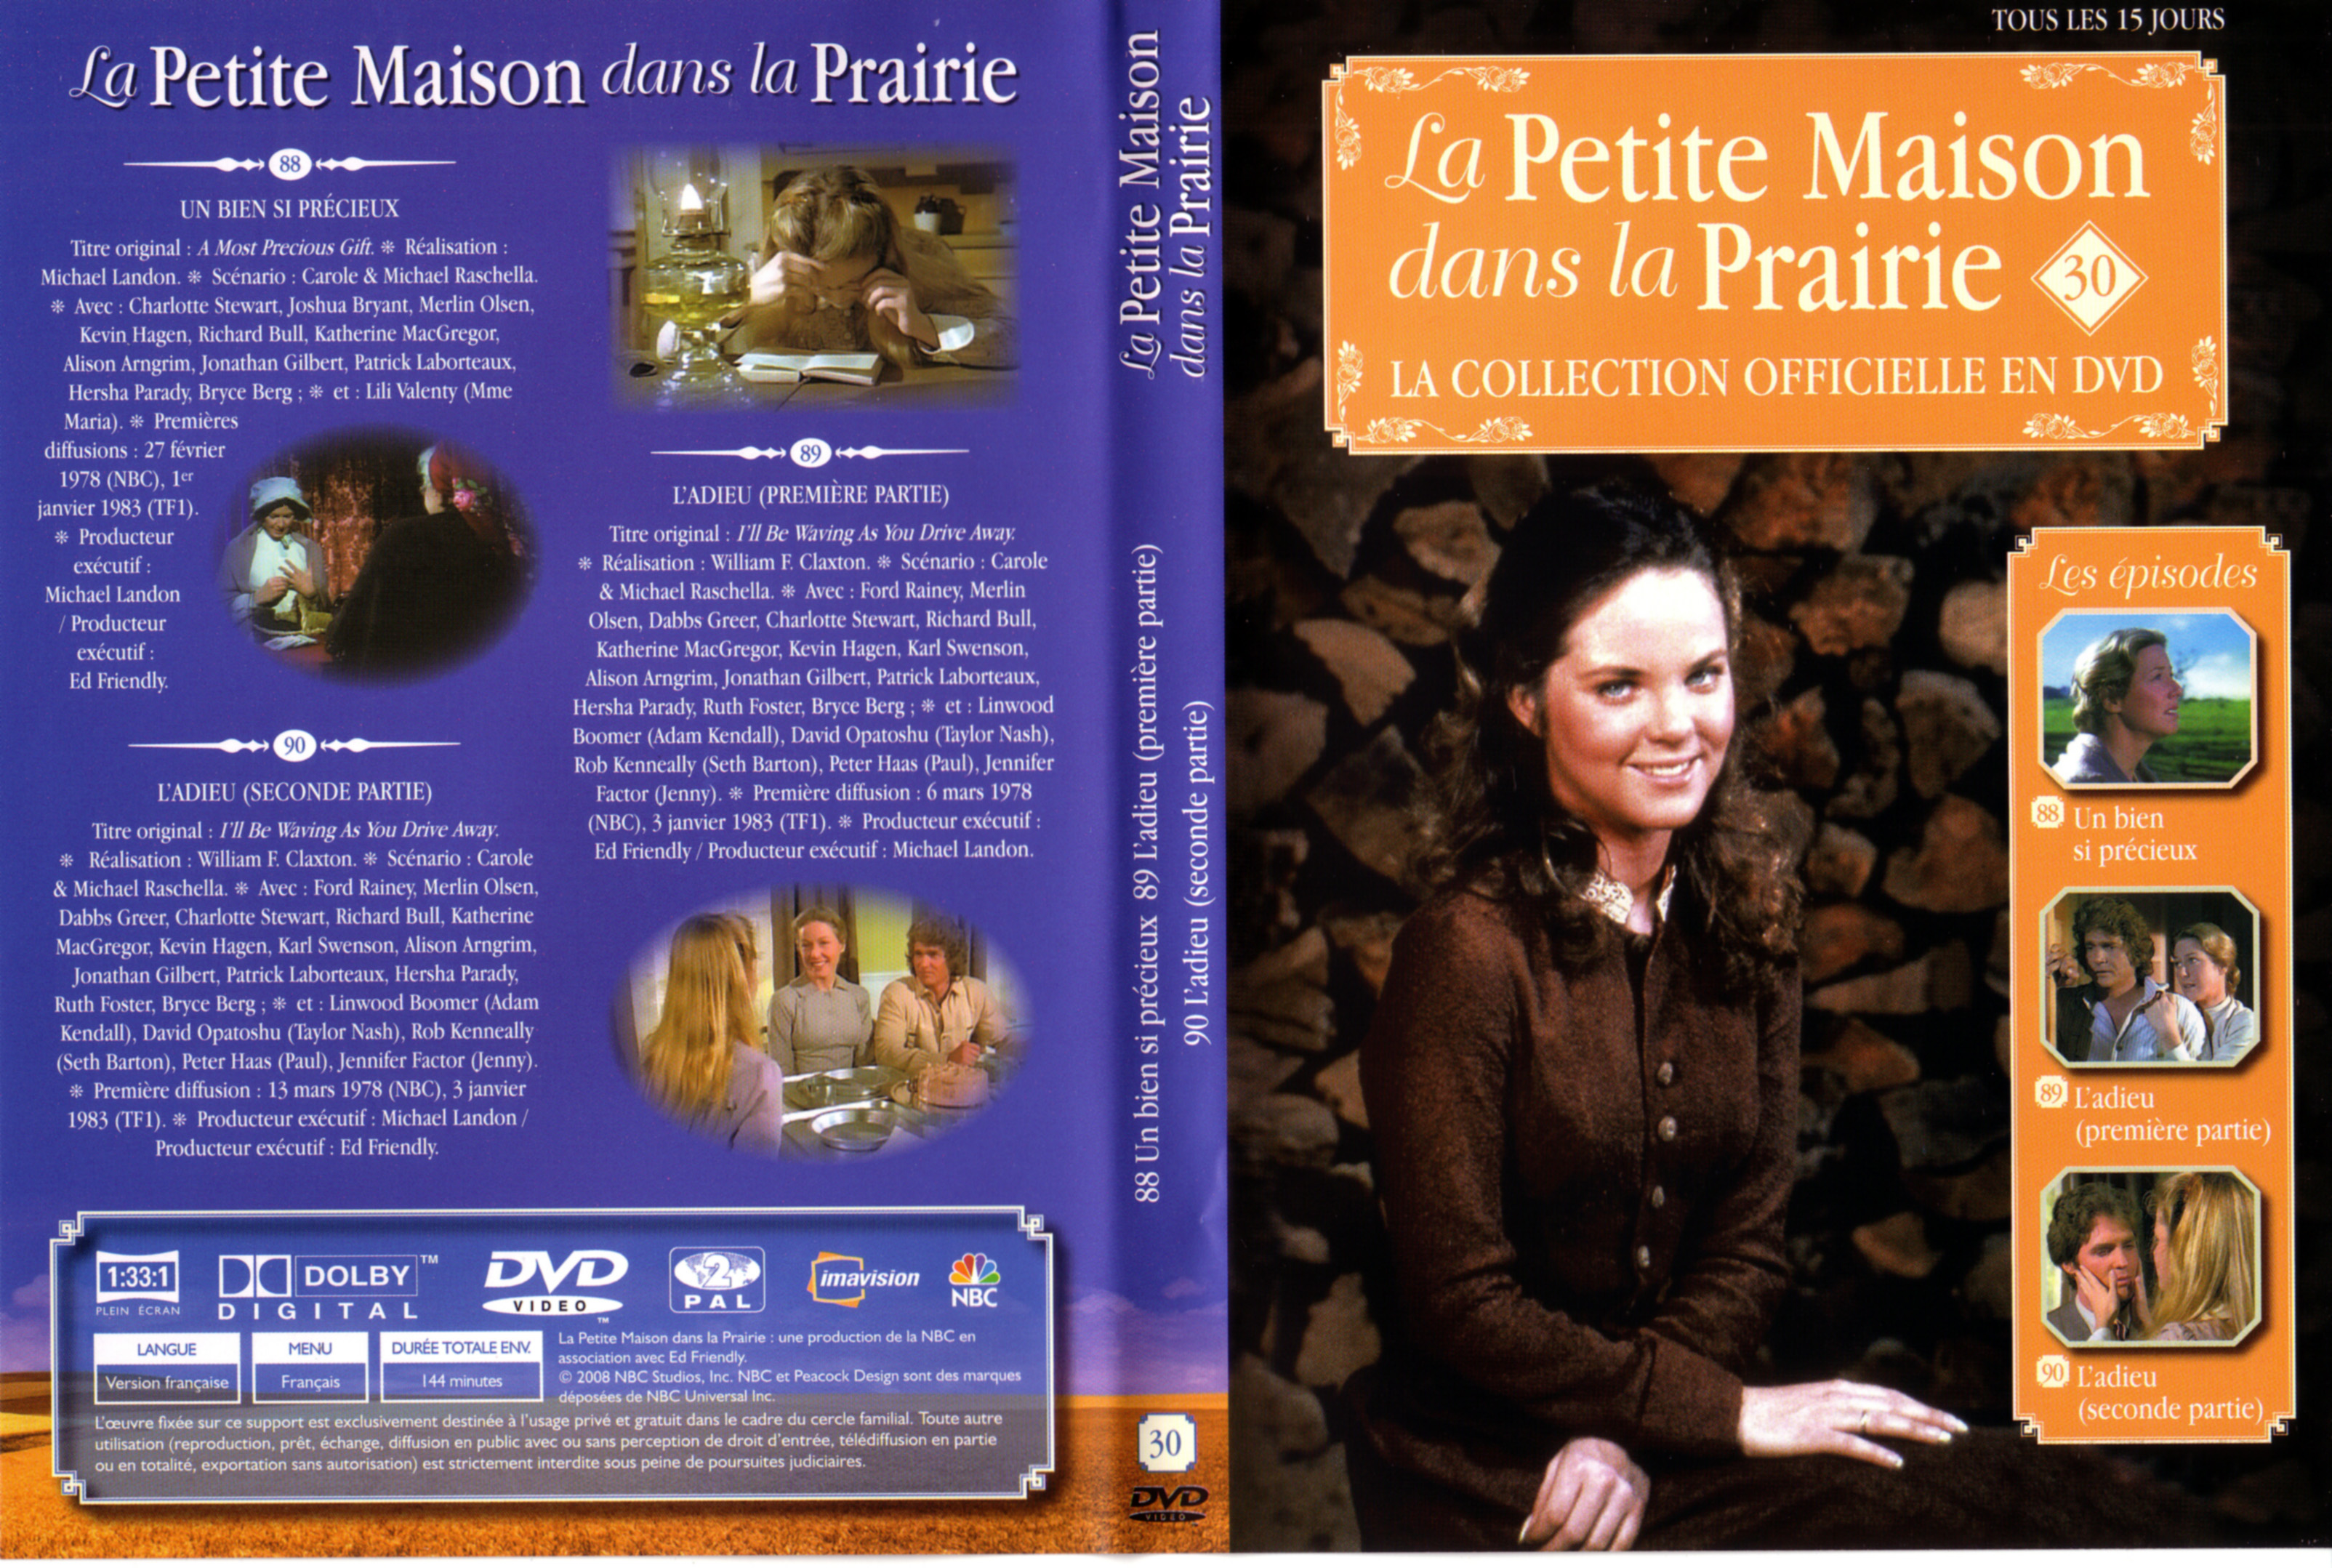 Jaquette DVD La petite maison dans la prairie La Collection vol 30